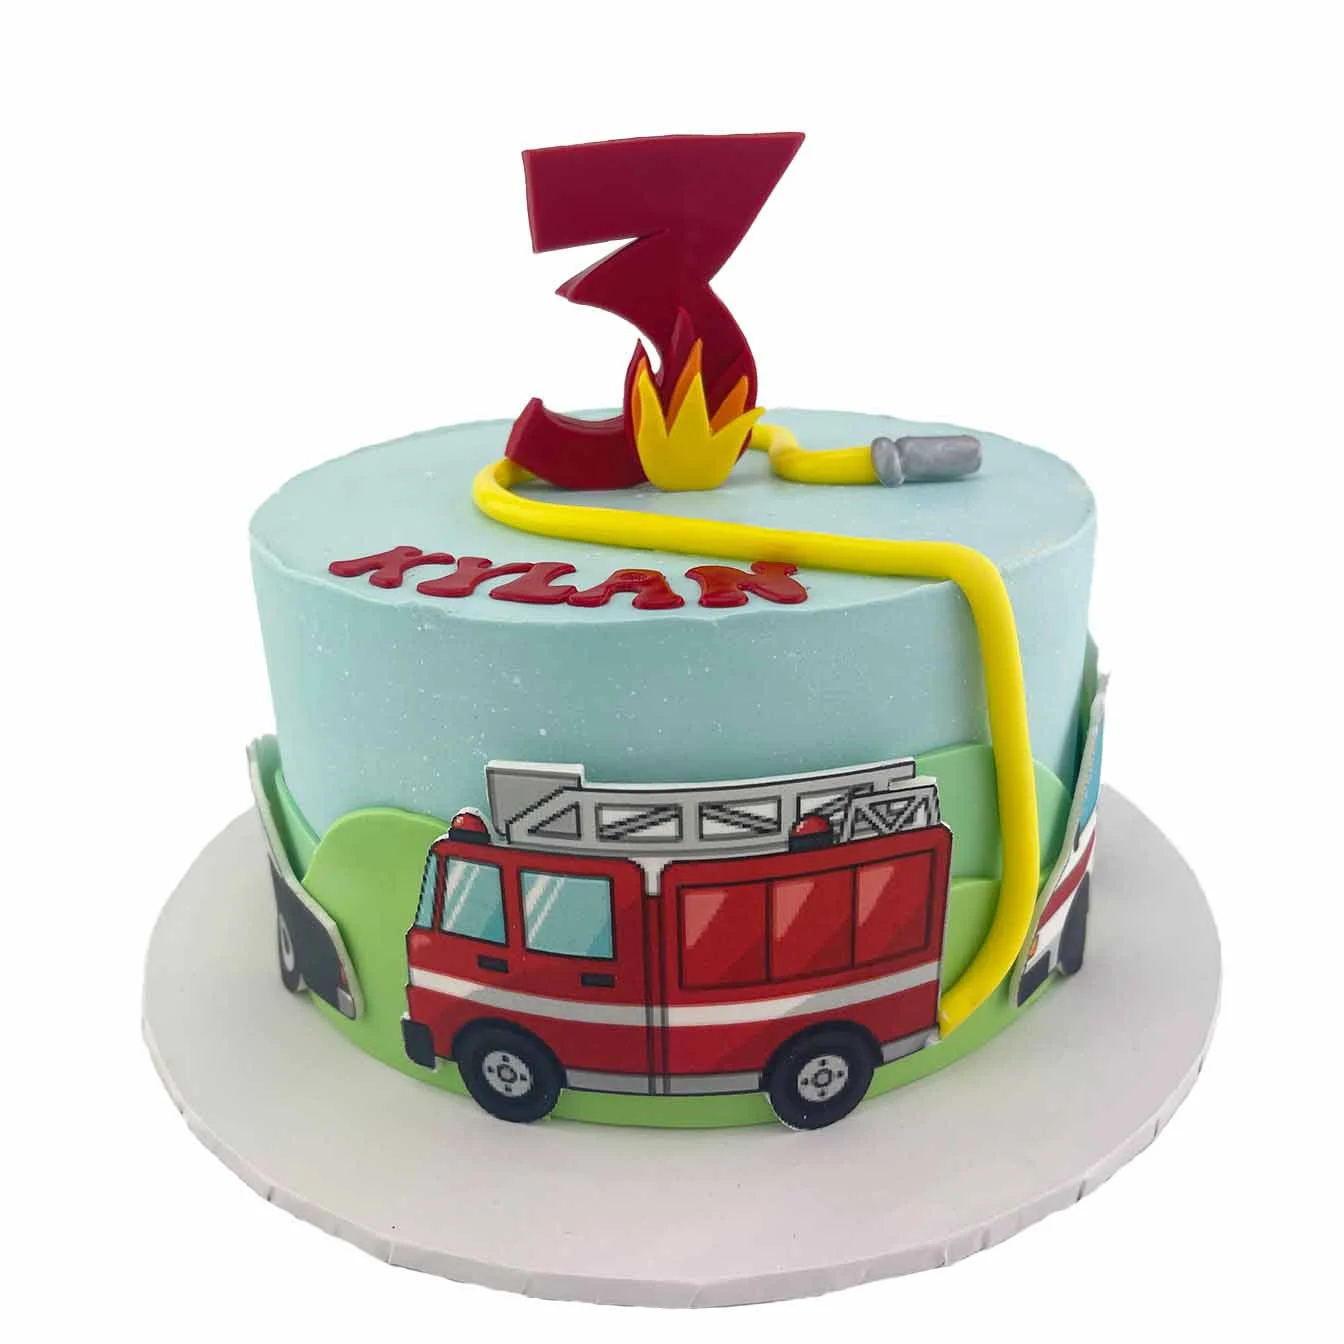 firetruckcake #firetruck #firetruckcaketutorial #cake #firetruckcakei... |  TikTok